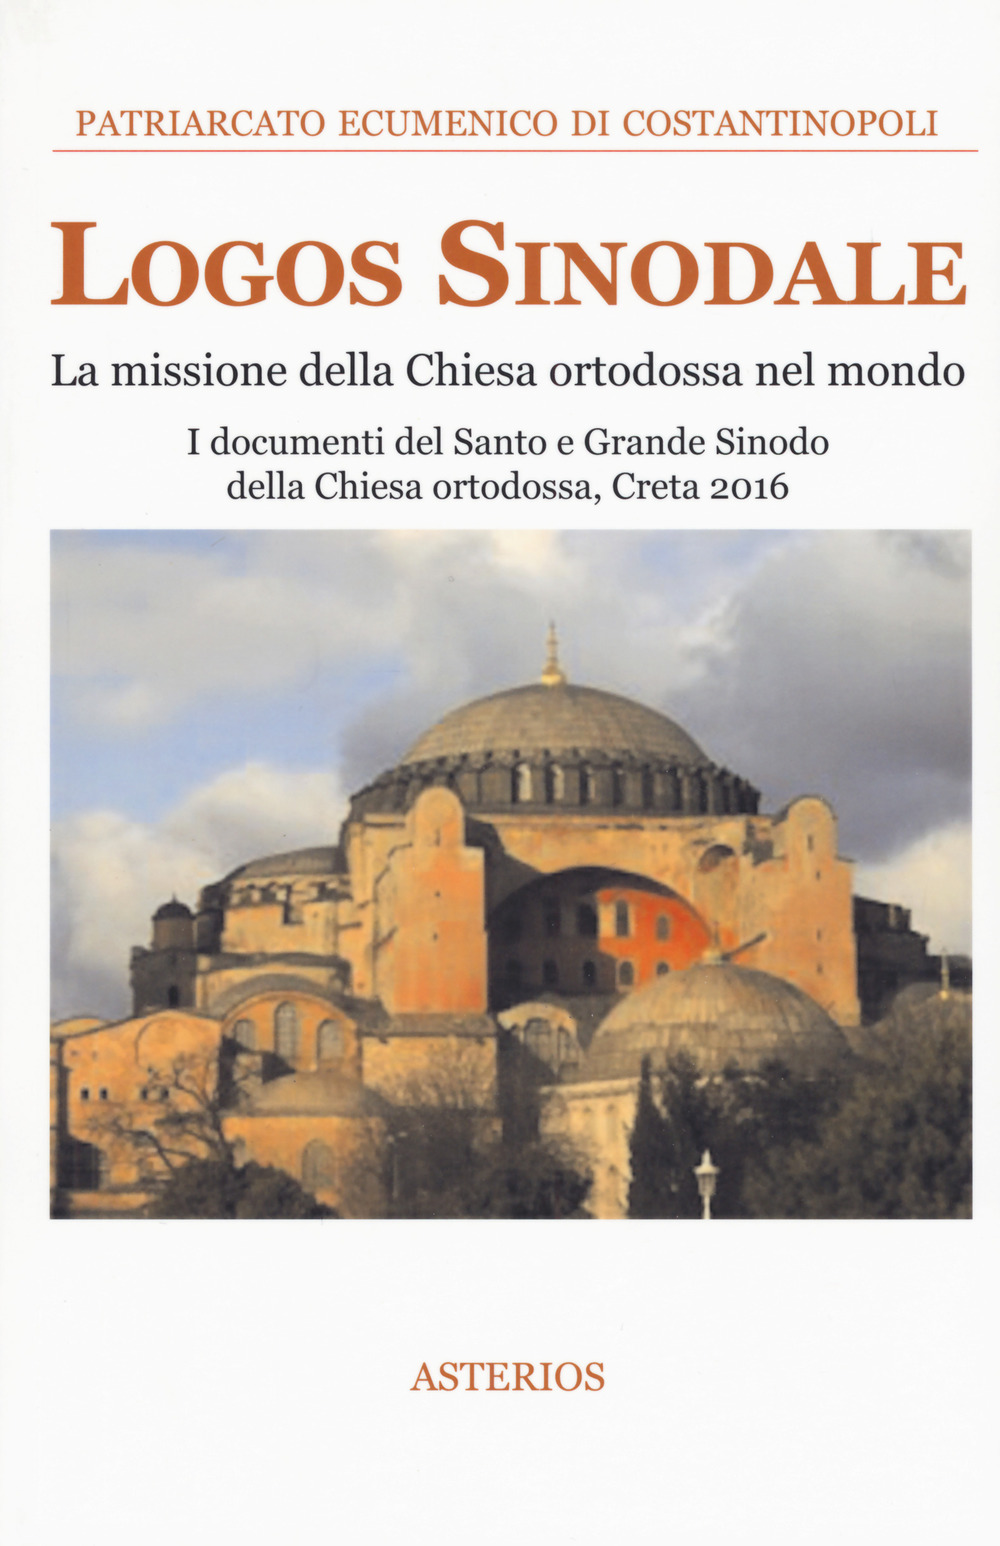 Logos sinodale. La missione della Chiesa ortodossa nel mondo. I documenti del santo e grande sinodo della Chiesa ortodossa (Creta, 2016)